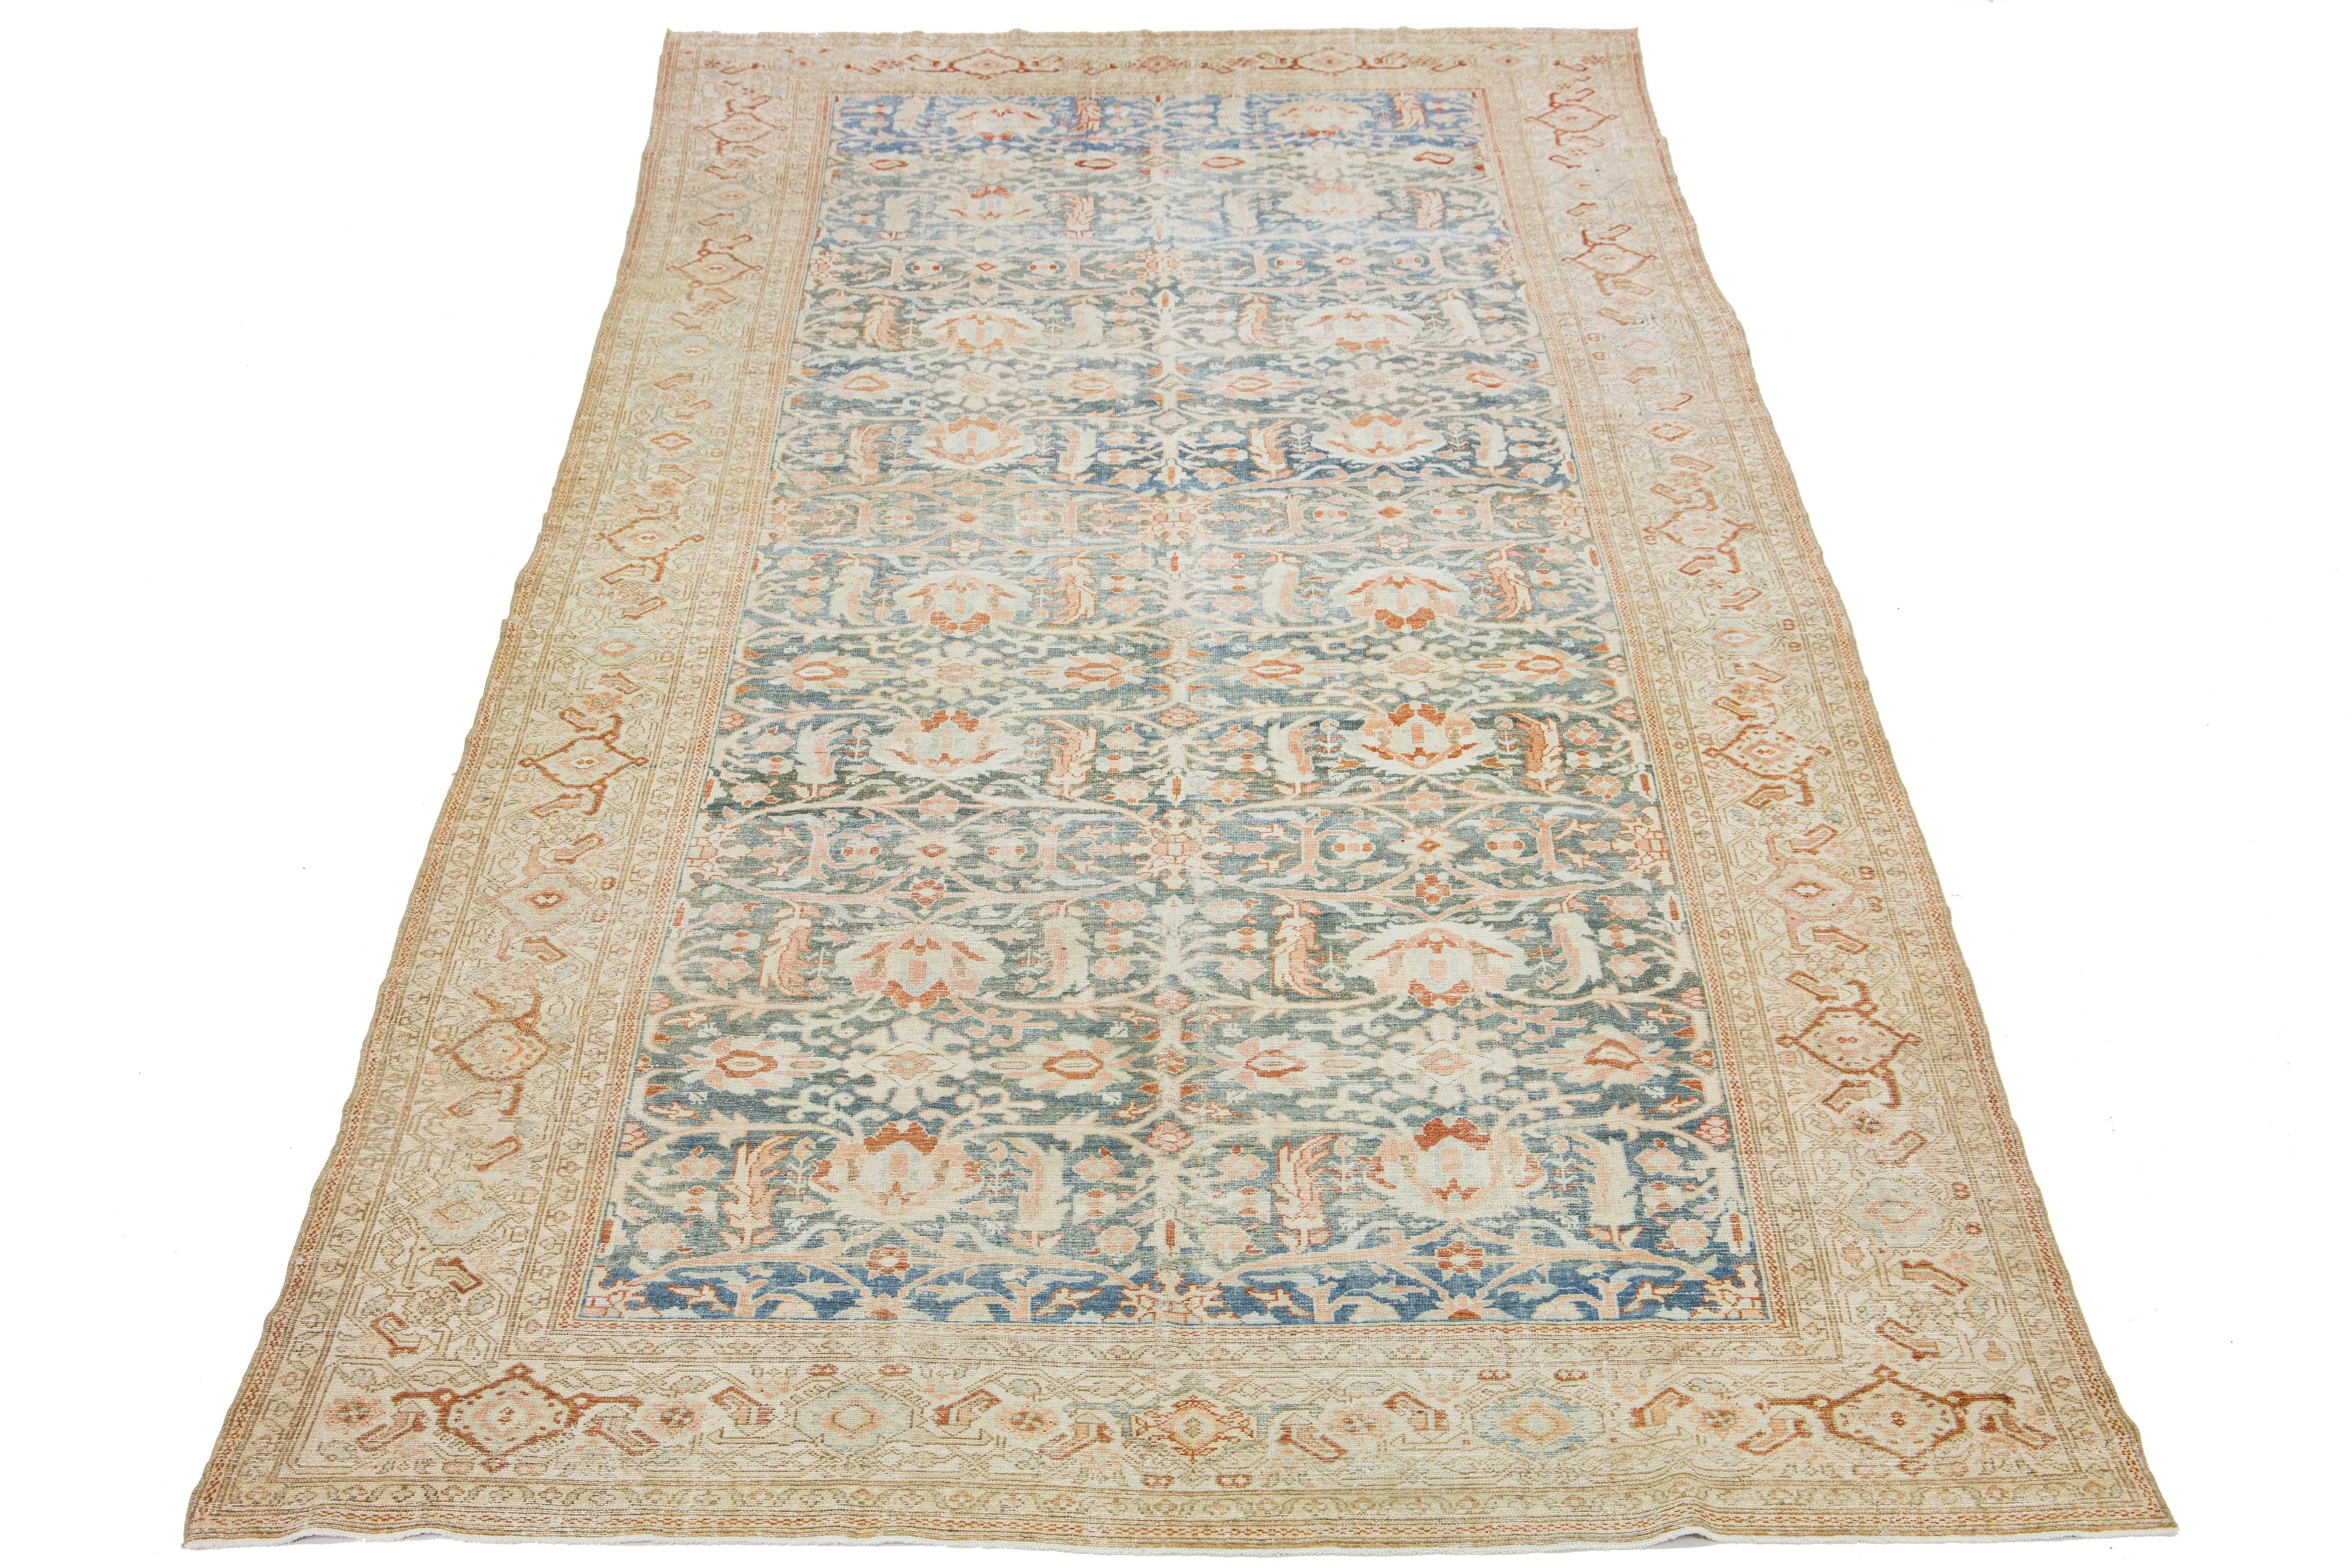 Dieser außergewöhnliche, antike persische Malayer-Teppich ist aus sorgfältig gewebter Wolle handgefertigt. Die Basis des Displays ist ein ruhiges Hellblau, das mit beigefarbenen und pfirsichfarbenen Akzenten in einem beeindruckend komplizierten,